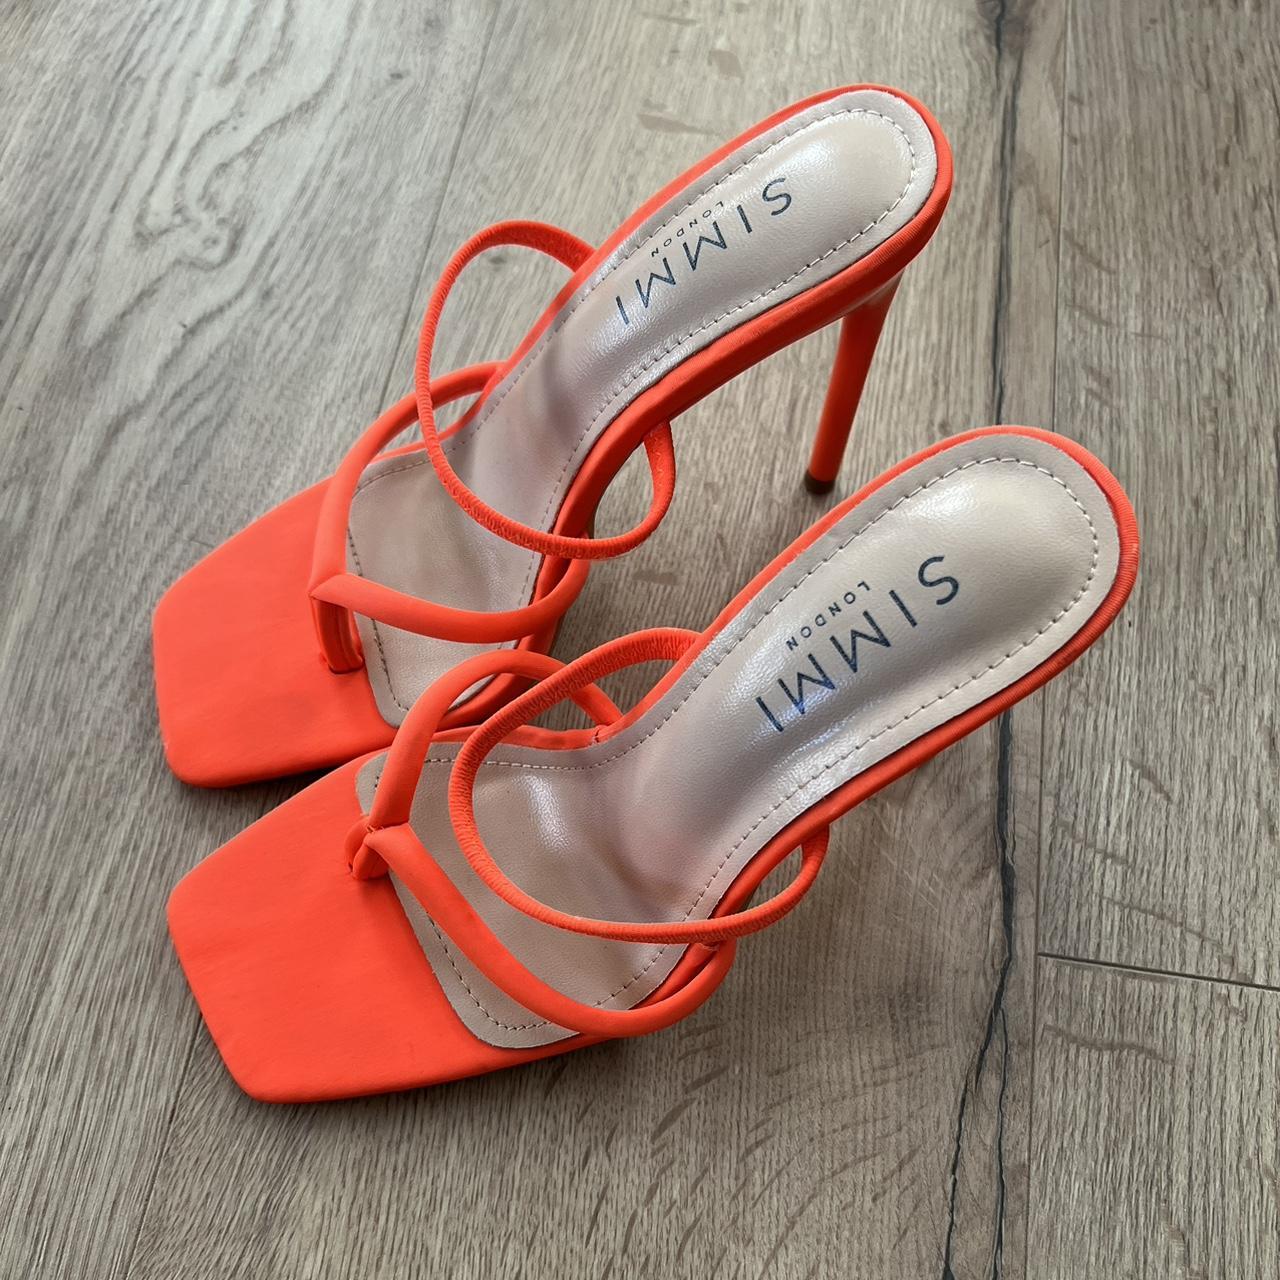 SIMMI SHOES UK 3 sandal heels in bright orange Worn... - Depop